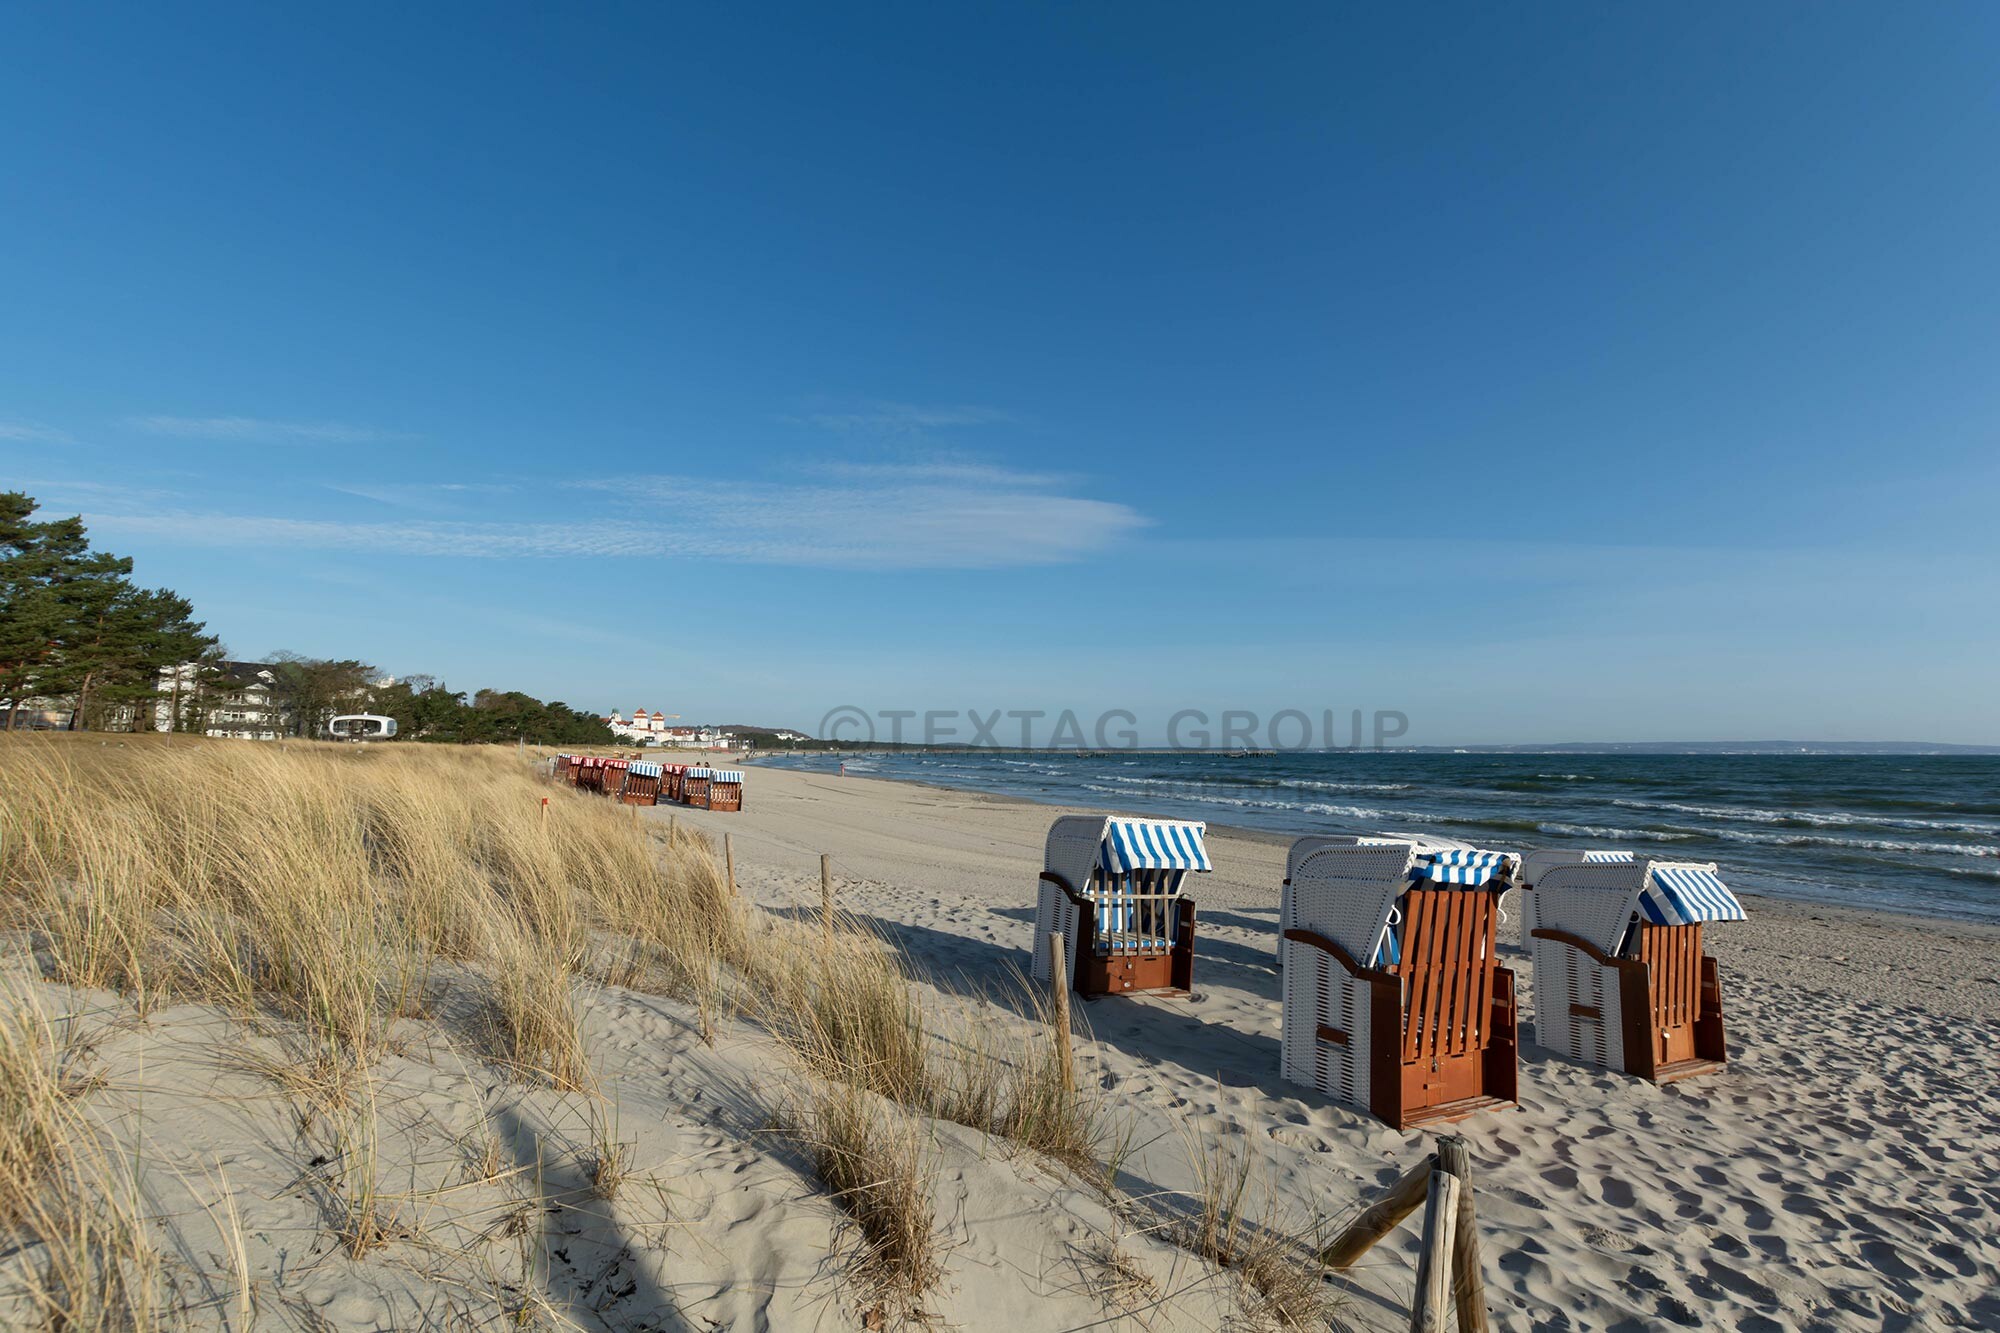 Foto Service Rügen - Von der Ostsee bis zur Nordsee fotografieren wir Ferienwohnungen, Immobilien, Hotels, Restaurants, Lebensmittel und Produkte